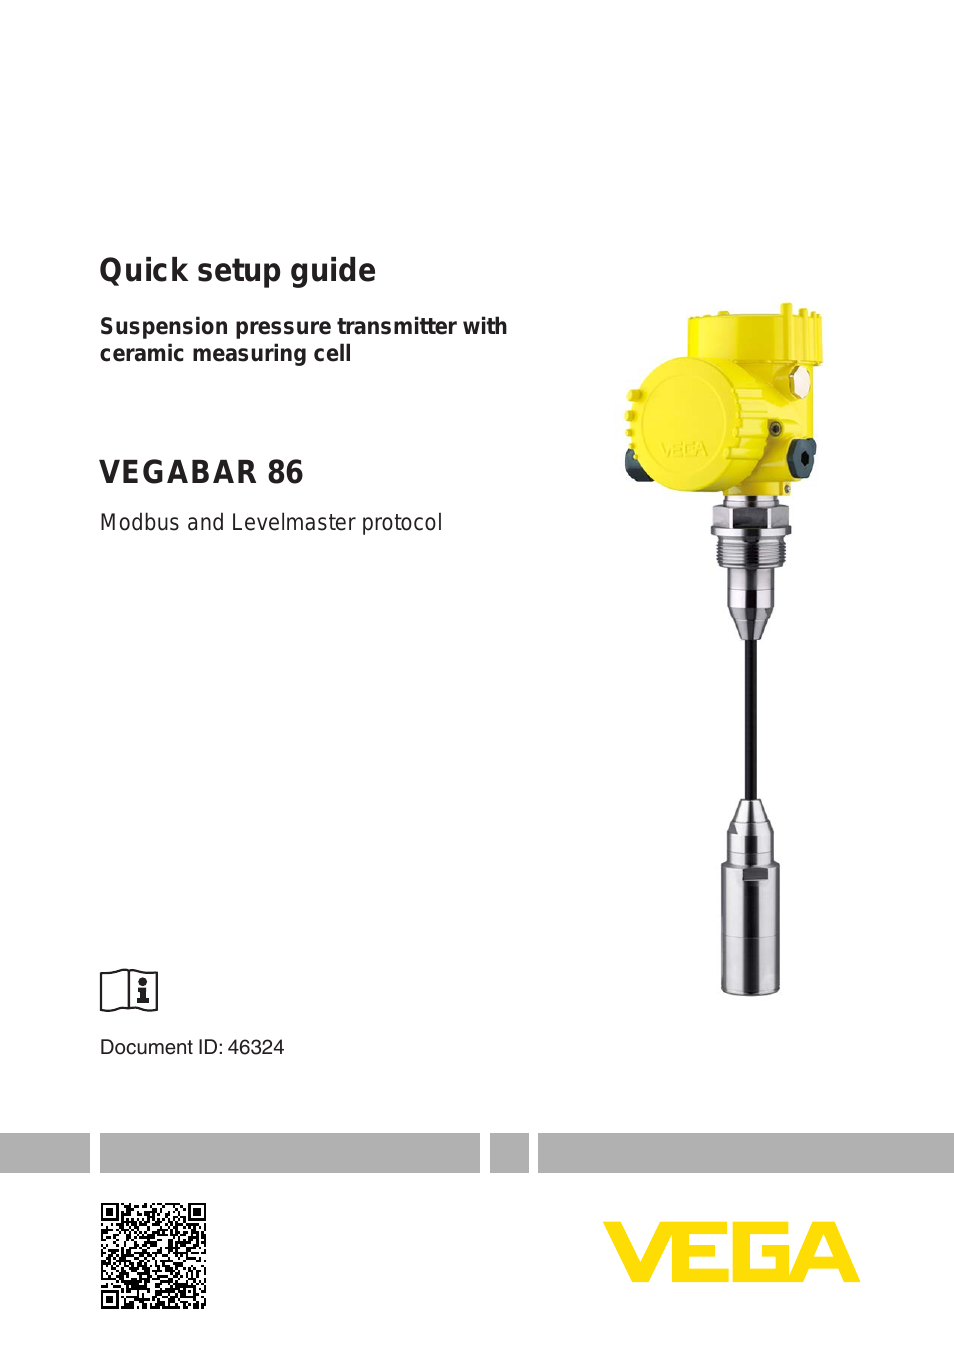 VEGABAR 86 Modbus and Levelmaster protocol - Quick setup guide